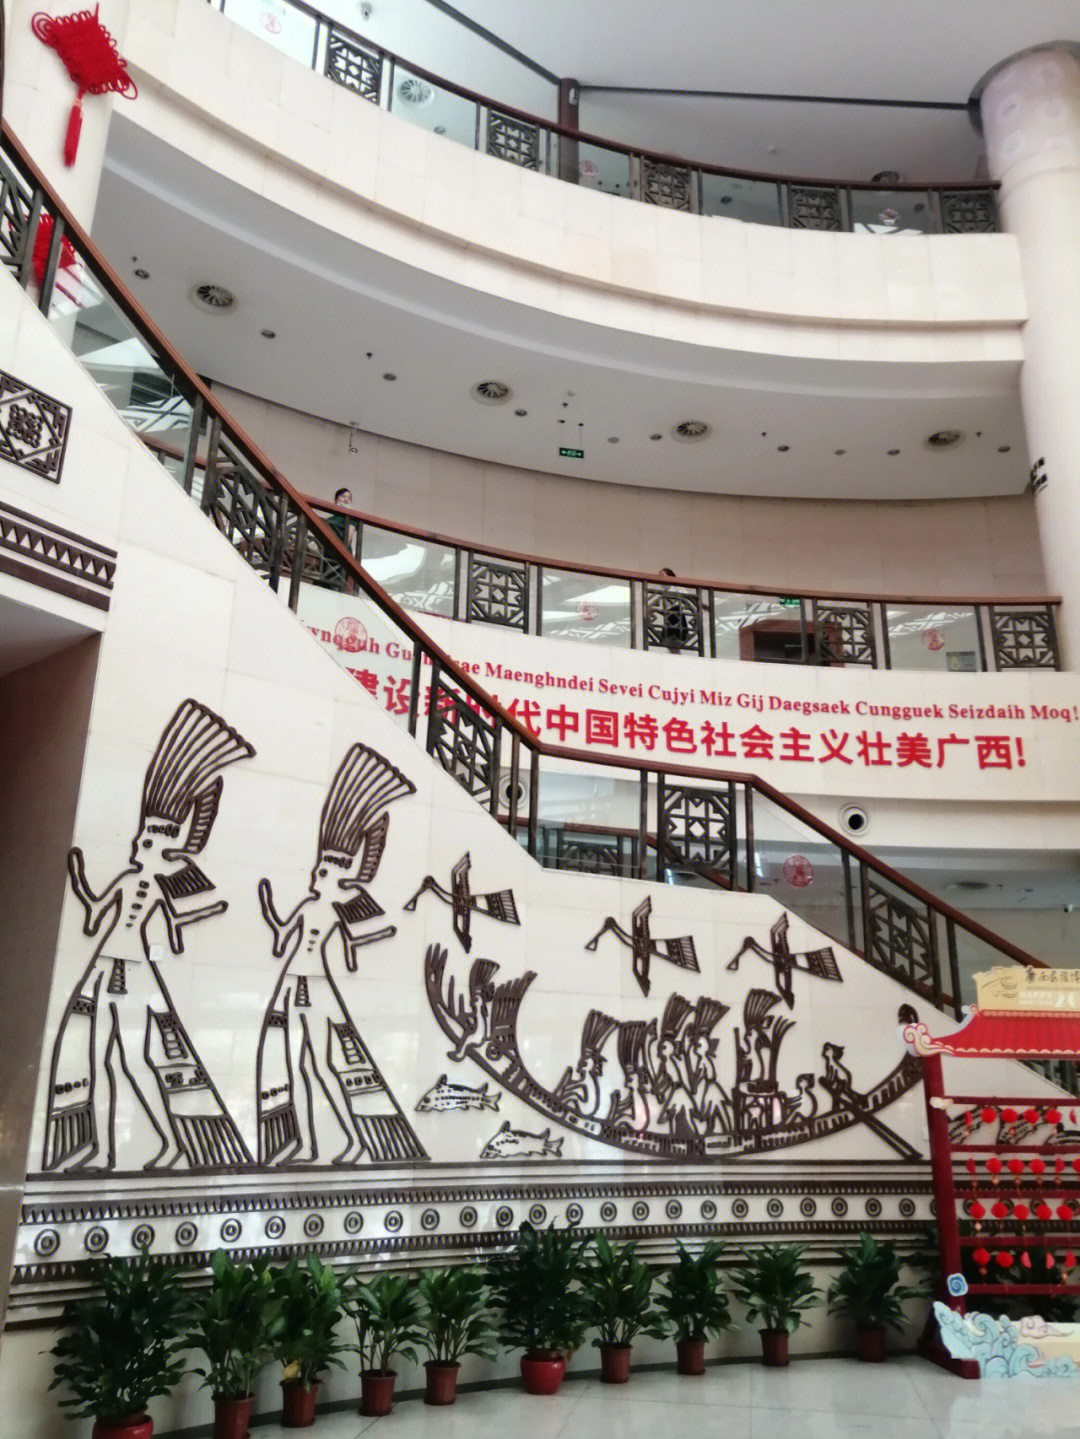 到南宁青环路的广西民族博物馆,很多人都会和扶梯前这面大铜鼓合影